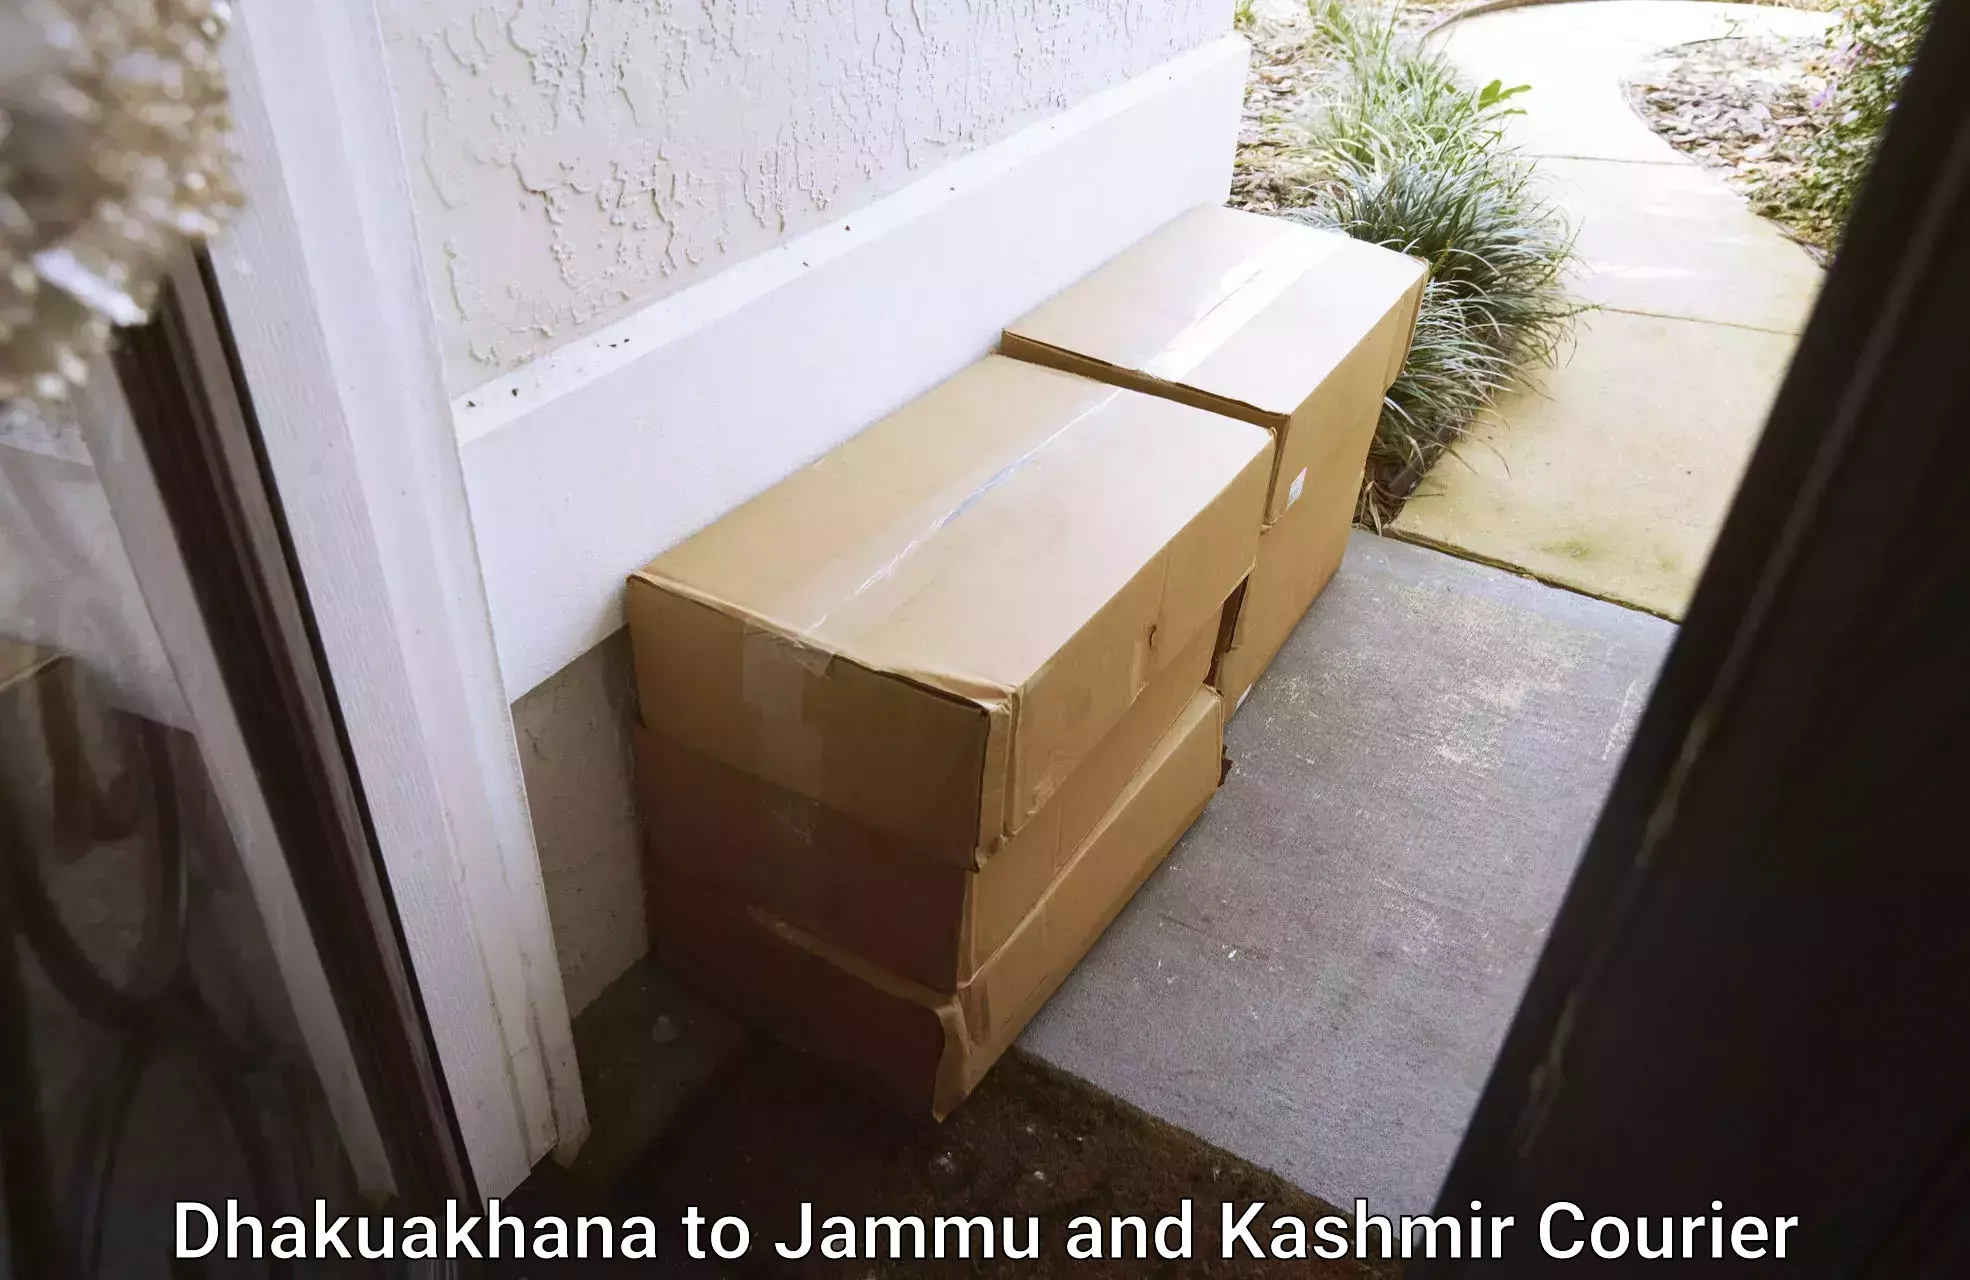 Quality courier partnerships Dhakuakhana to Ramban